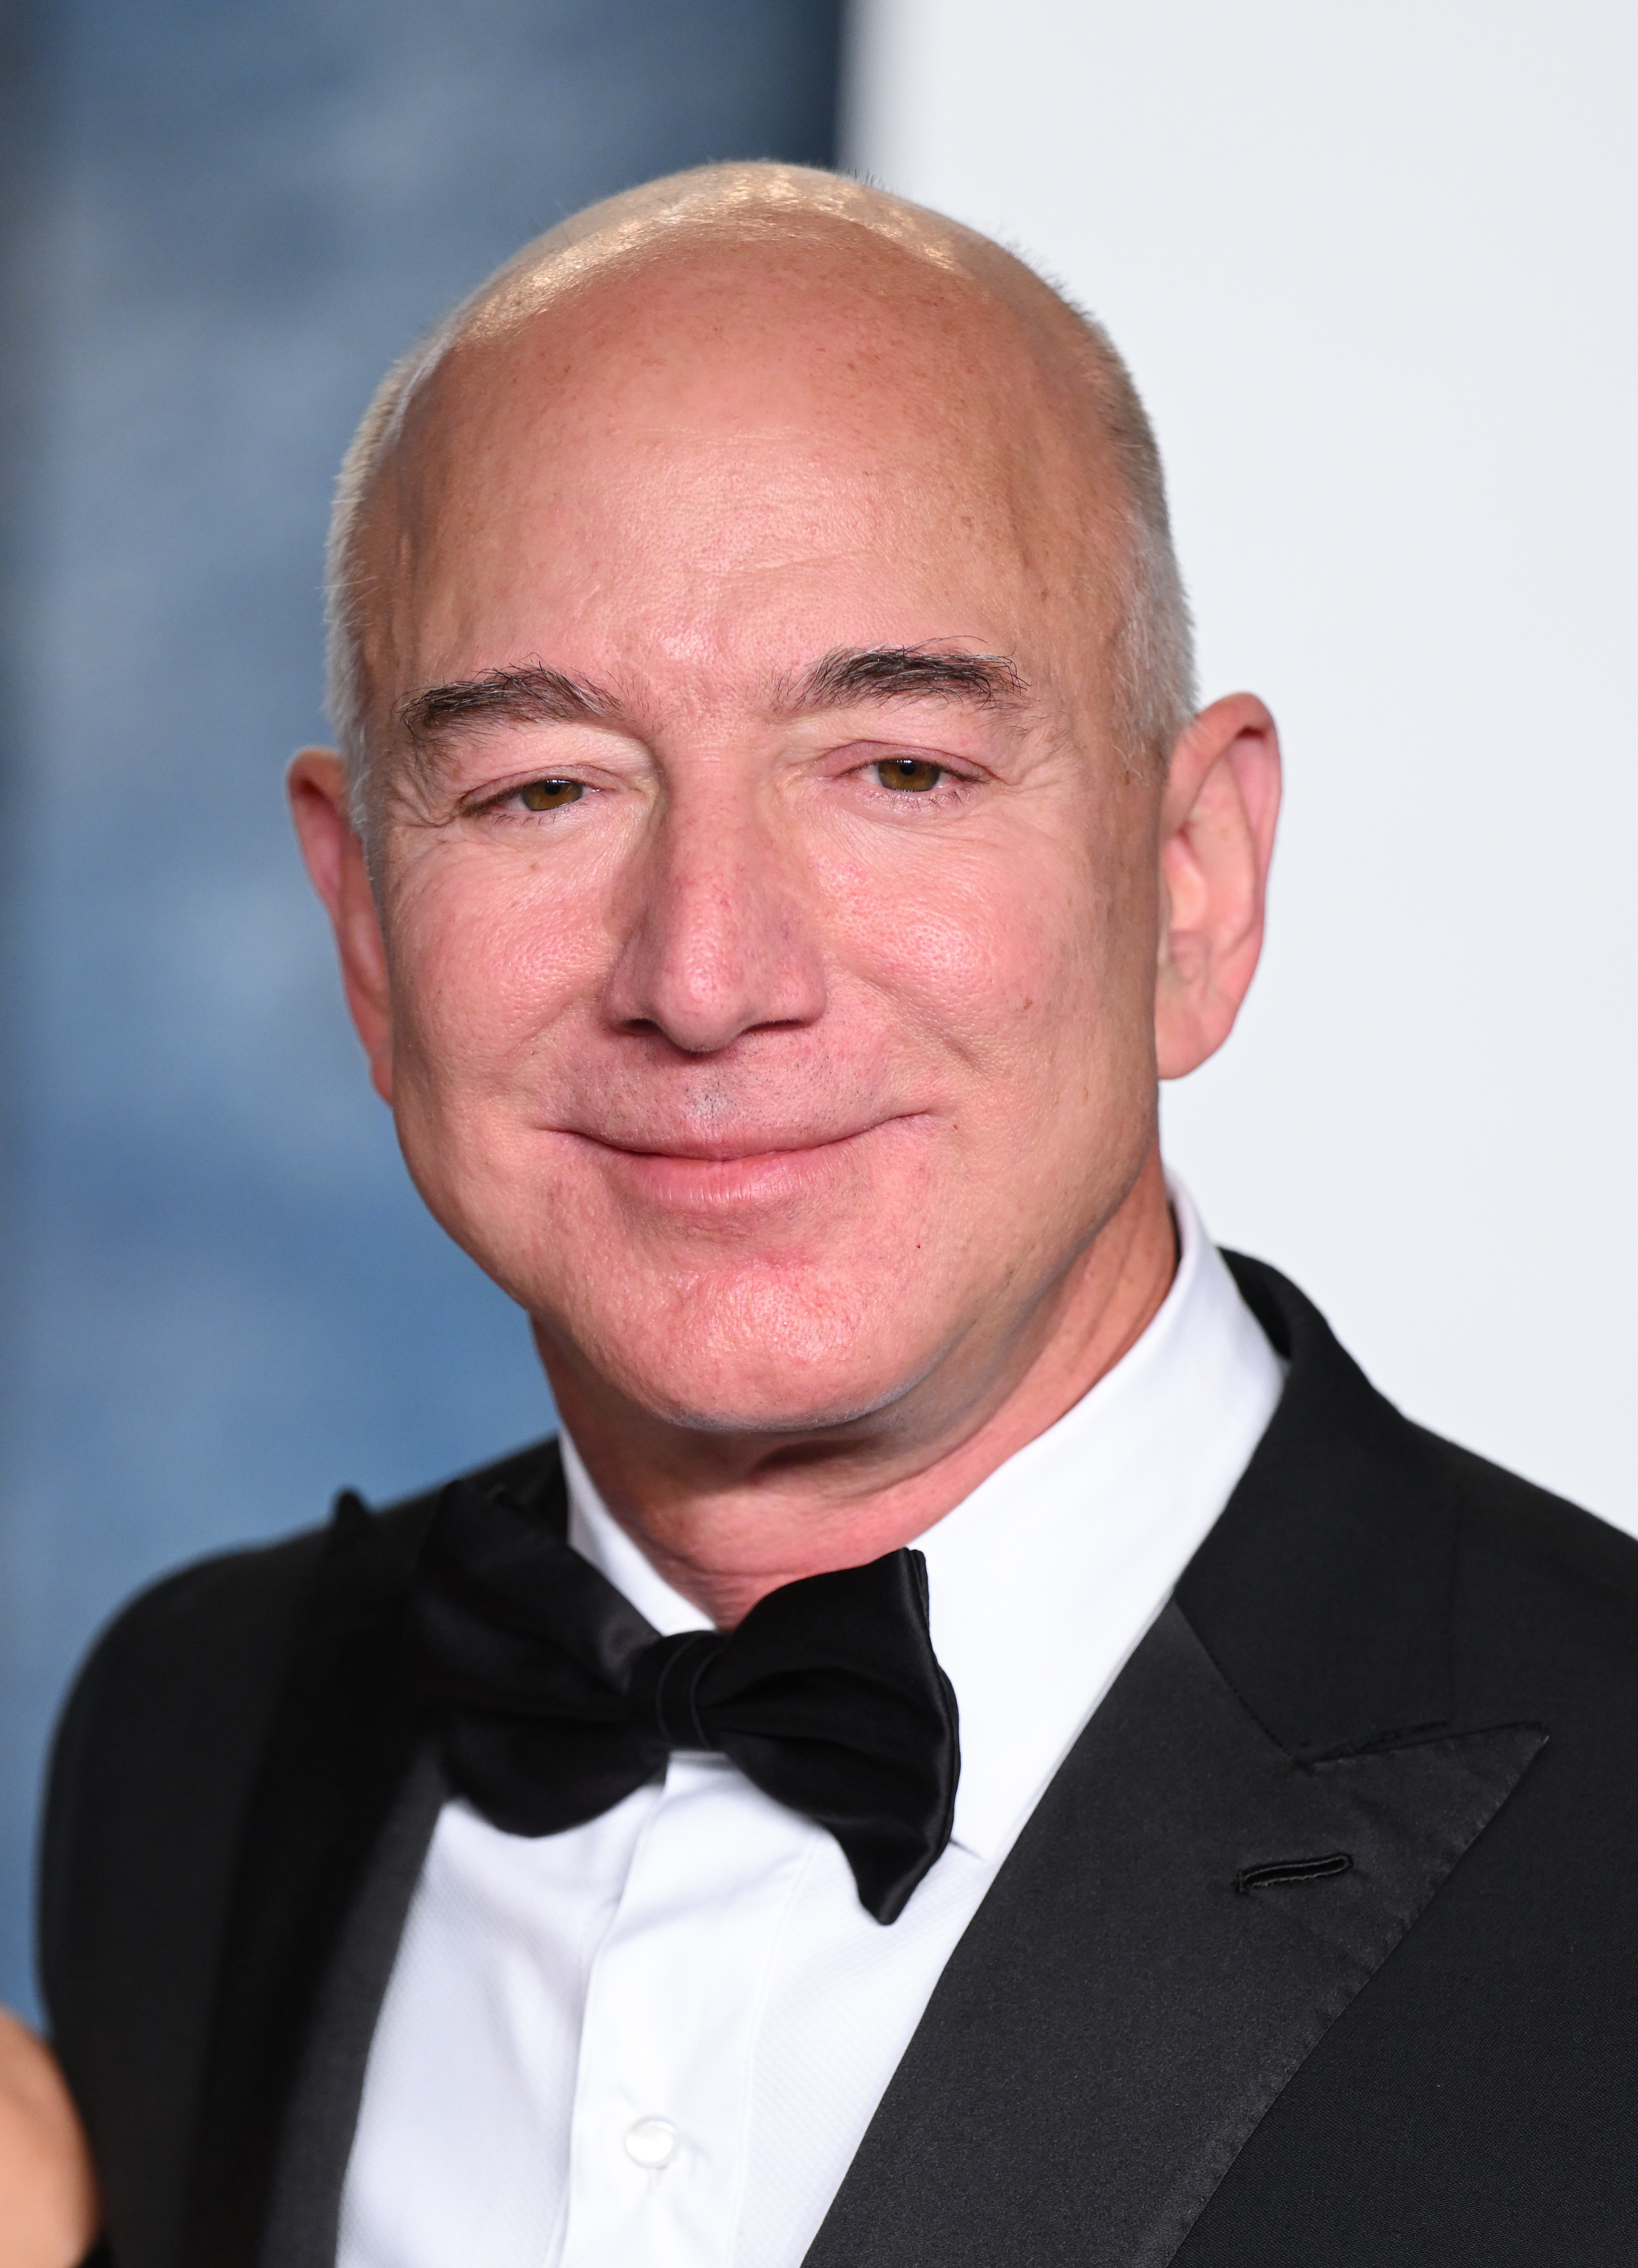 Closeup of Jeff Bezos